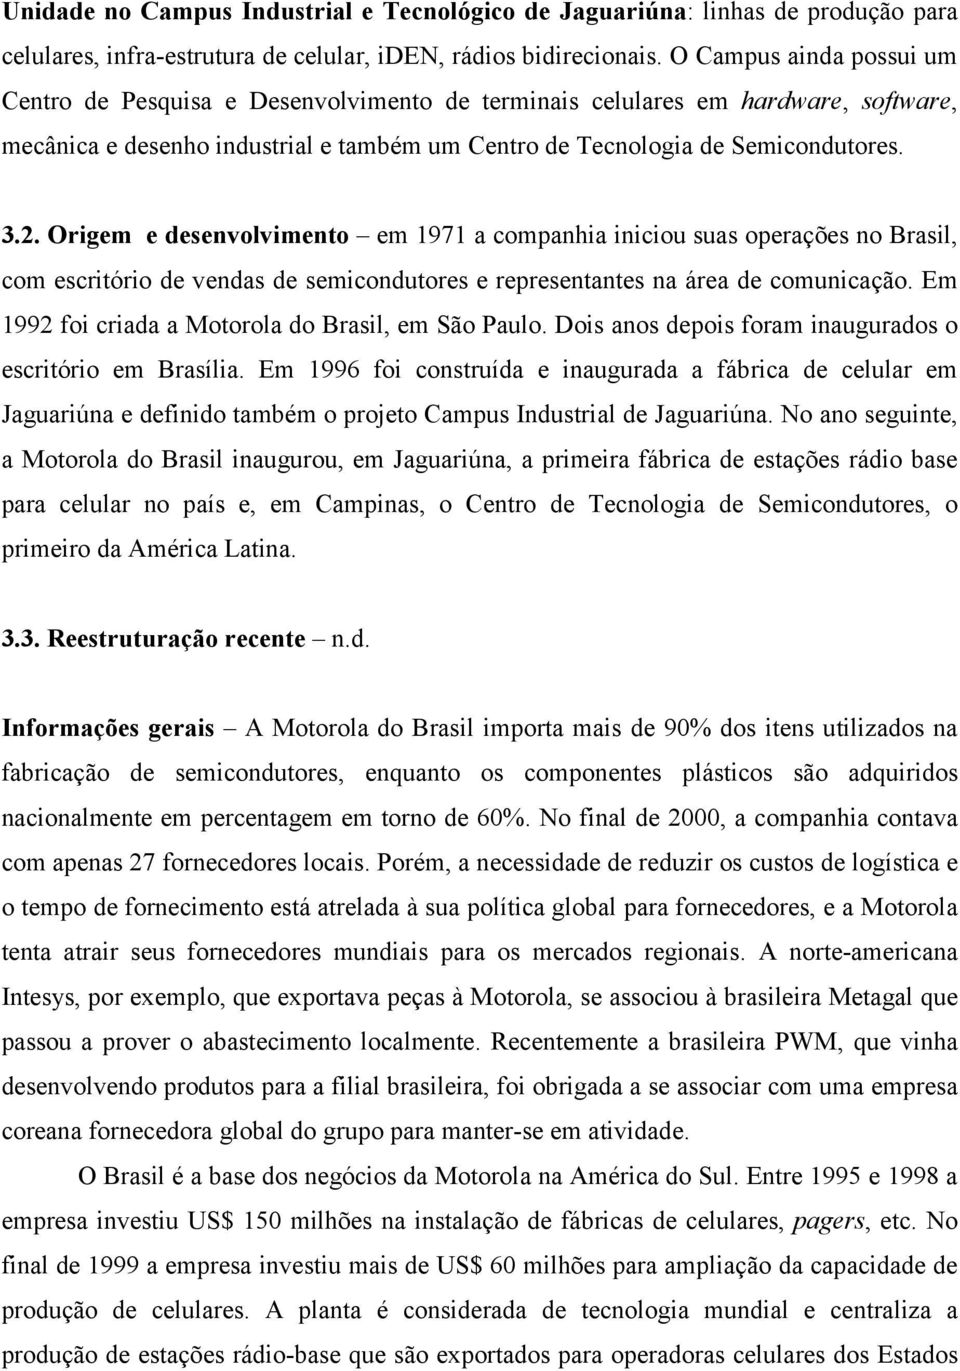 Origem e desenvolvimento em 1971 a companhia iniciou suas operações no Brasil, com escritório de vendas de semicondutores e representantes na área de comunicação.